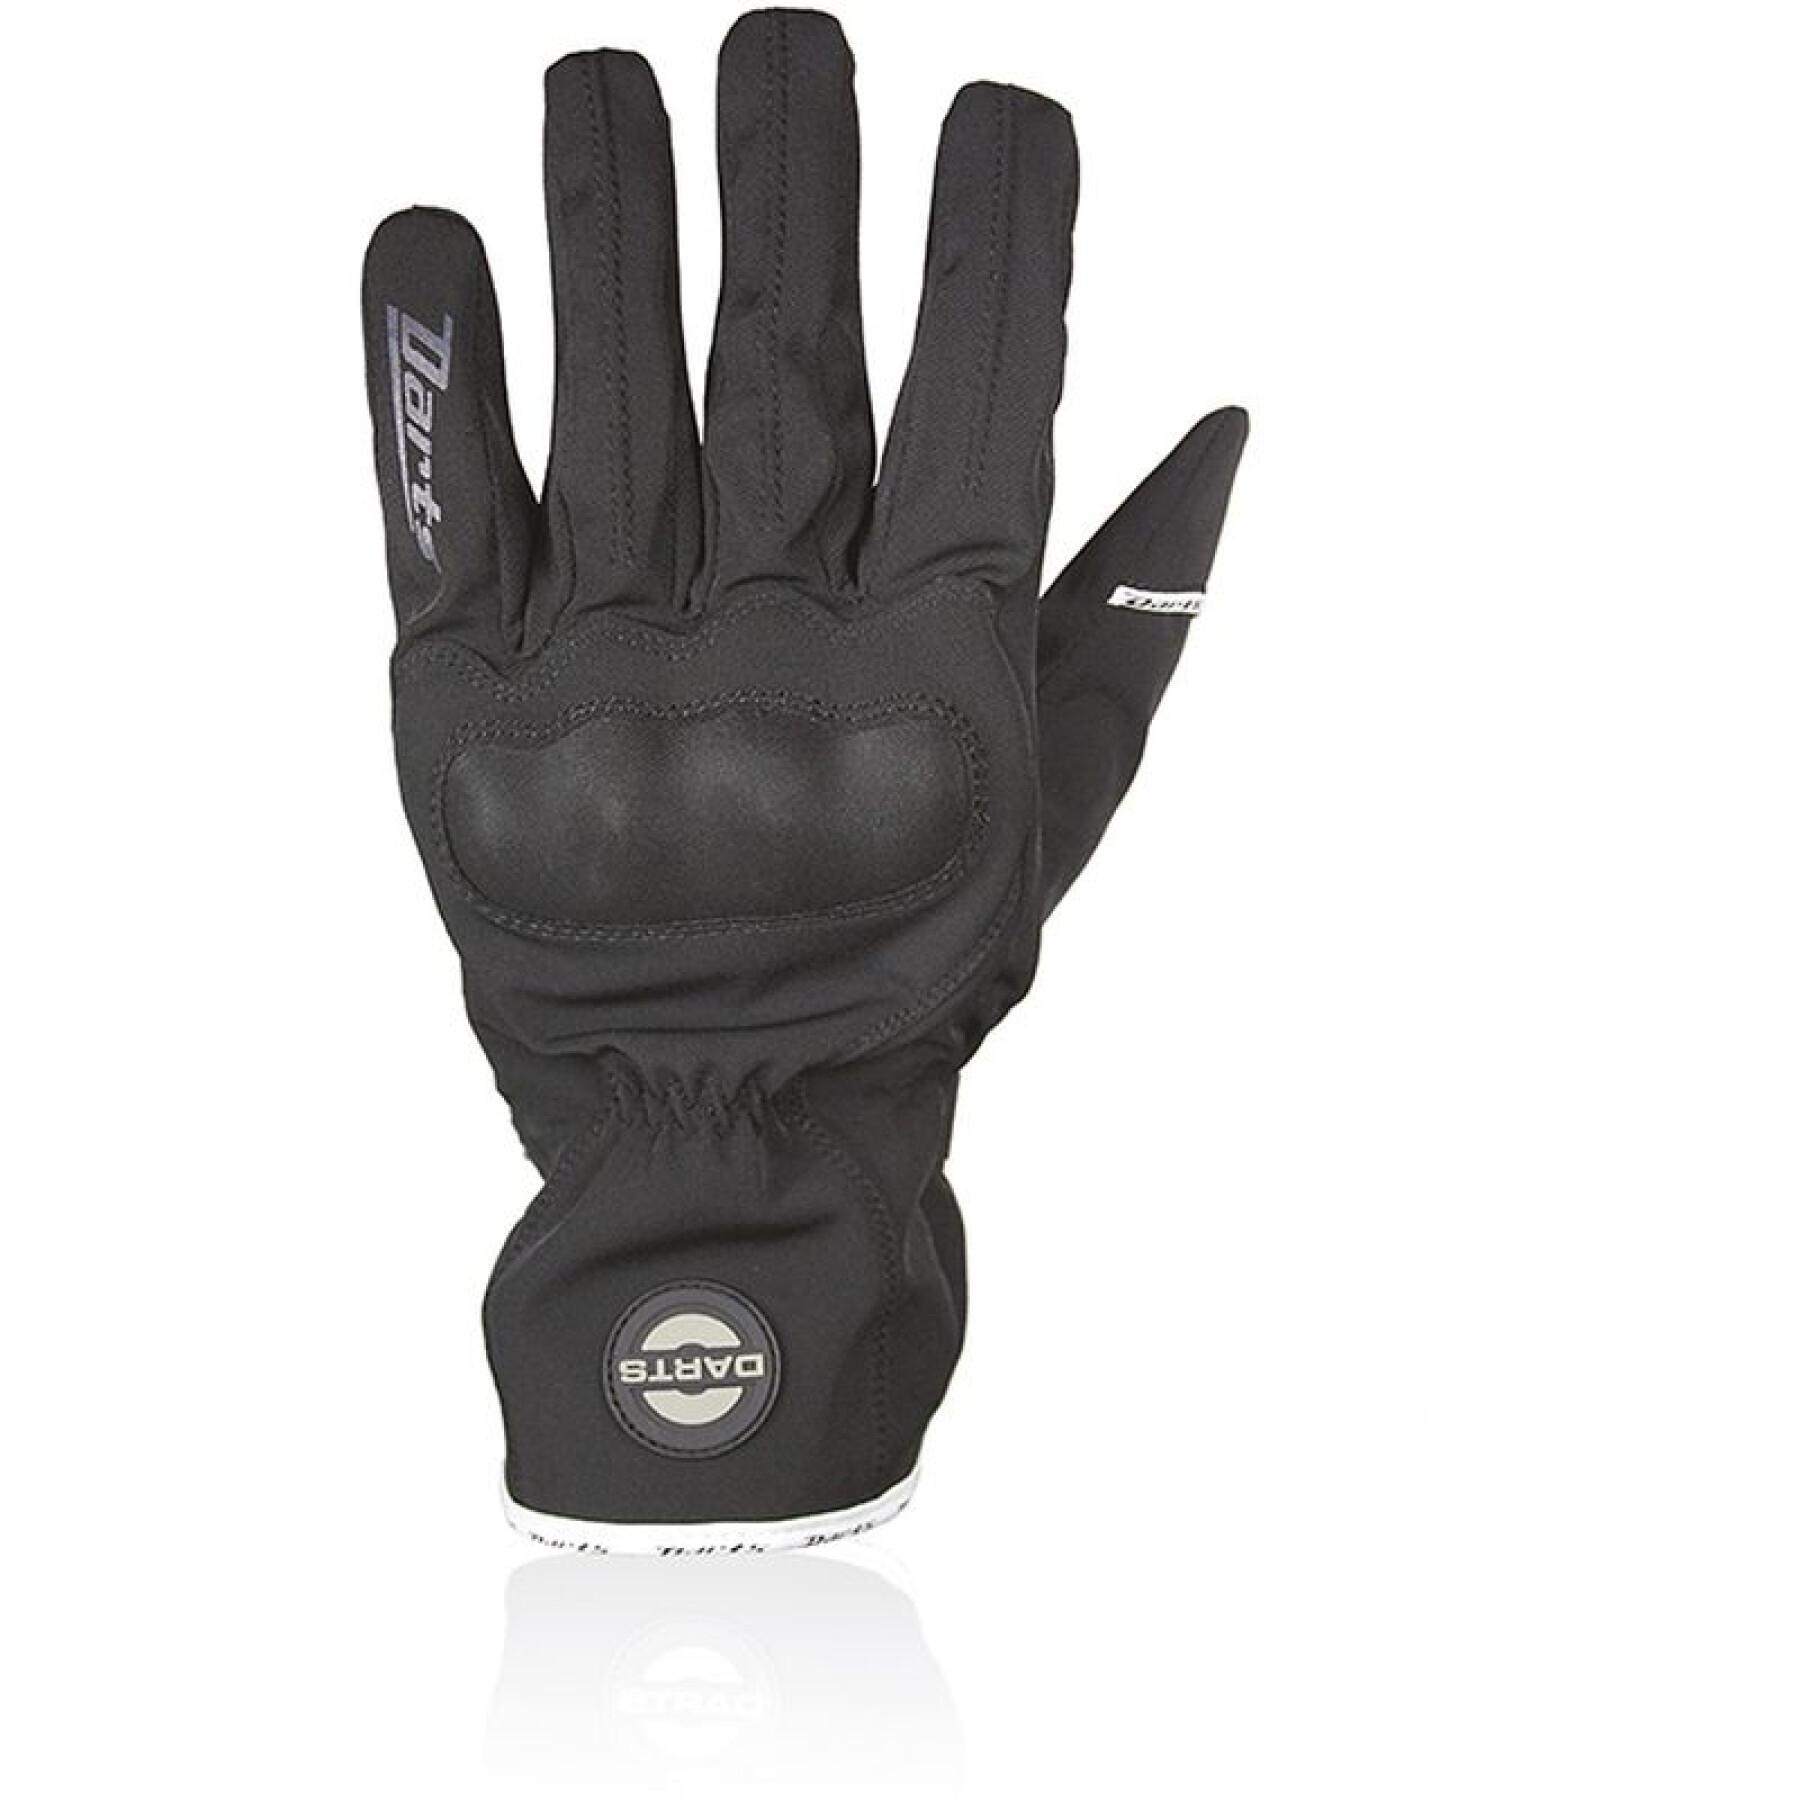 Mid-season motorcycle gloves Harisson halifax